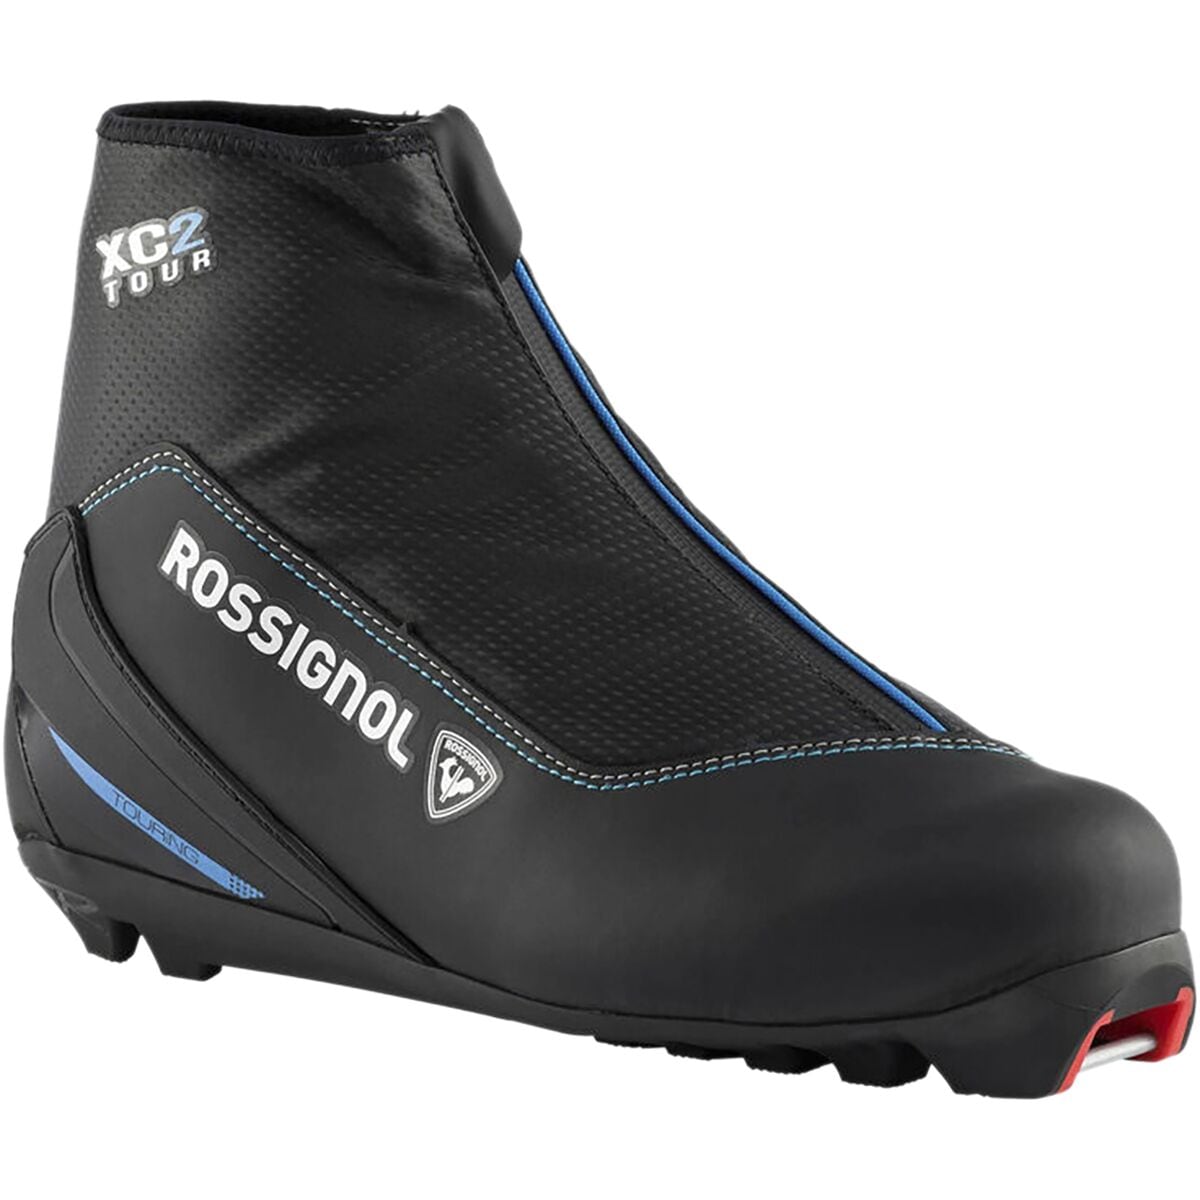 Rossignol XC 2 FW Ski Boot